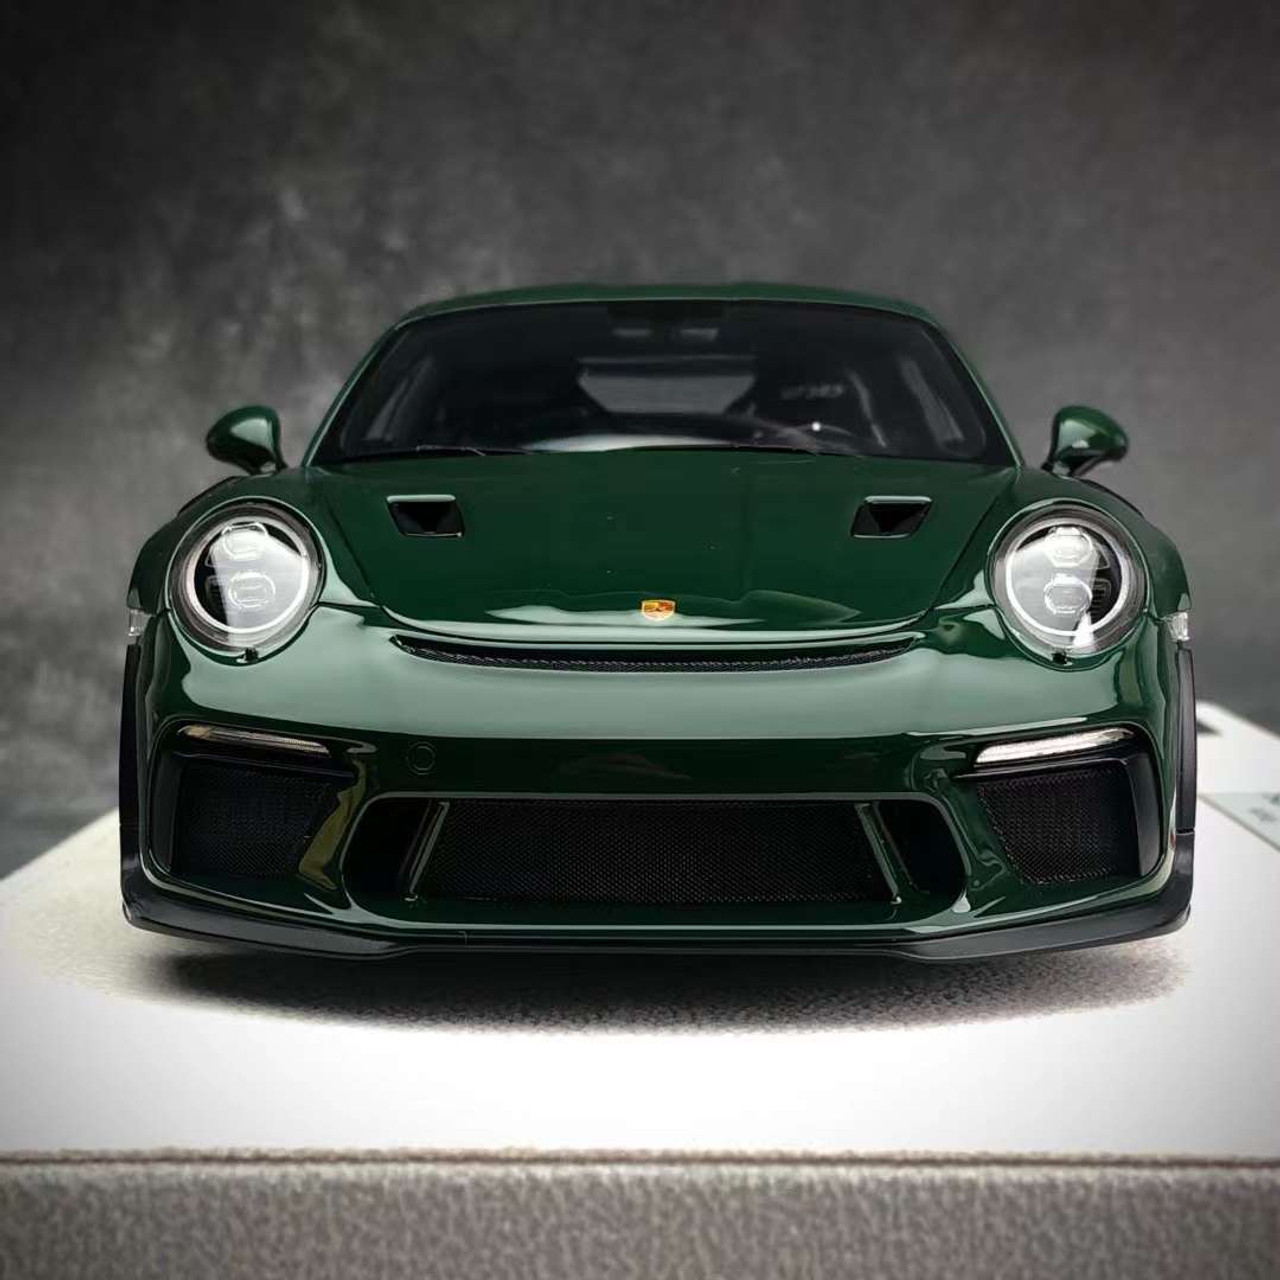 1/18 Makeup Porsche 911 991.2 GT3 RS (Dark Green) Resin Car Model Limited 30 Pieces